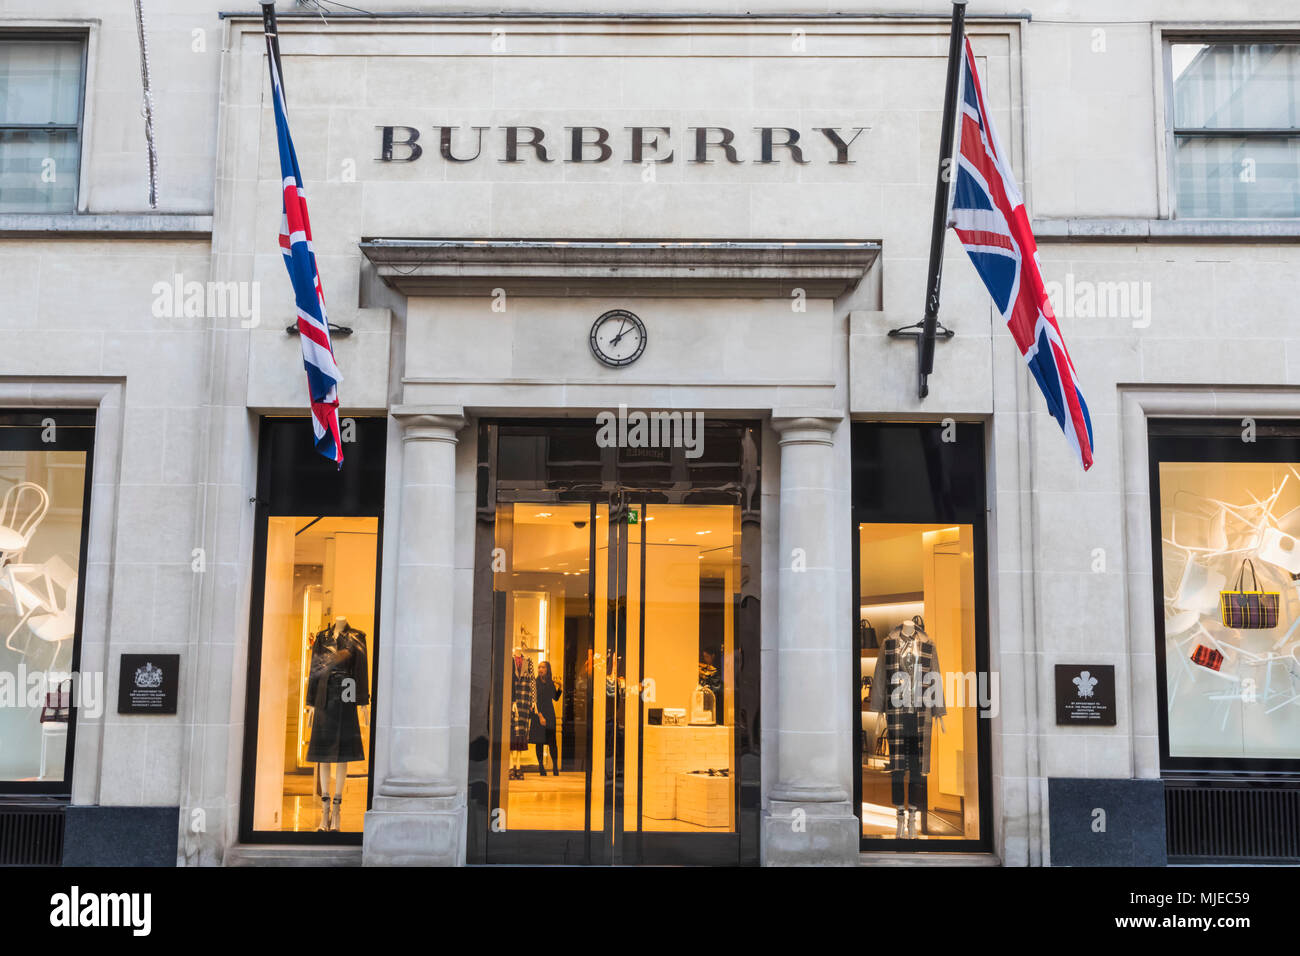 Burberry Bond Street Banque d'image et photos - Alamy